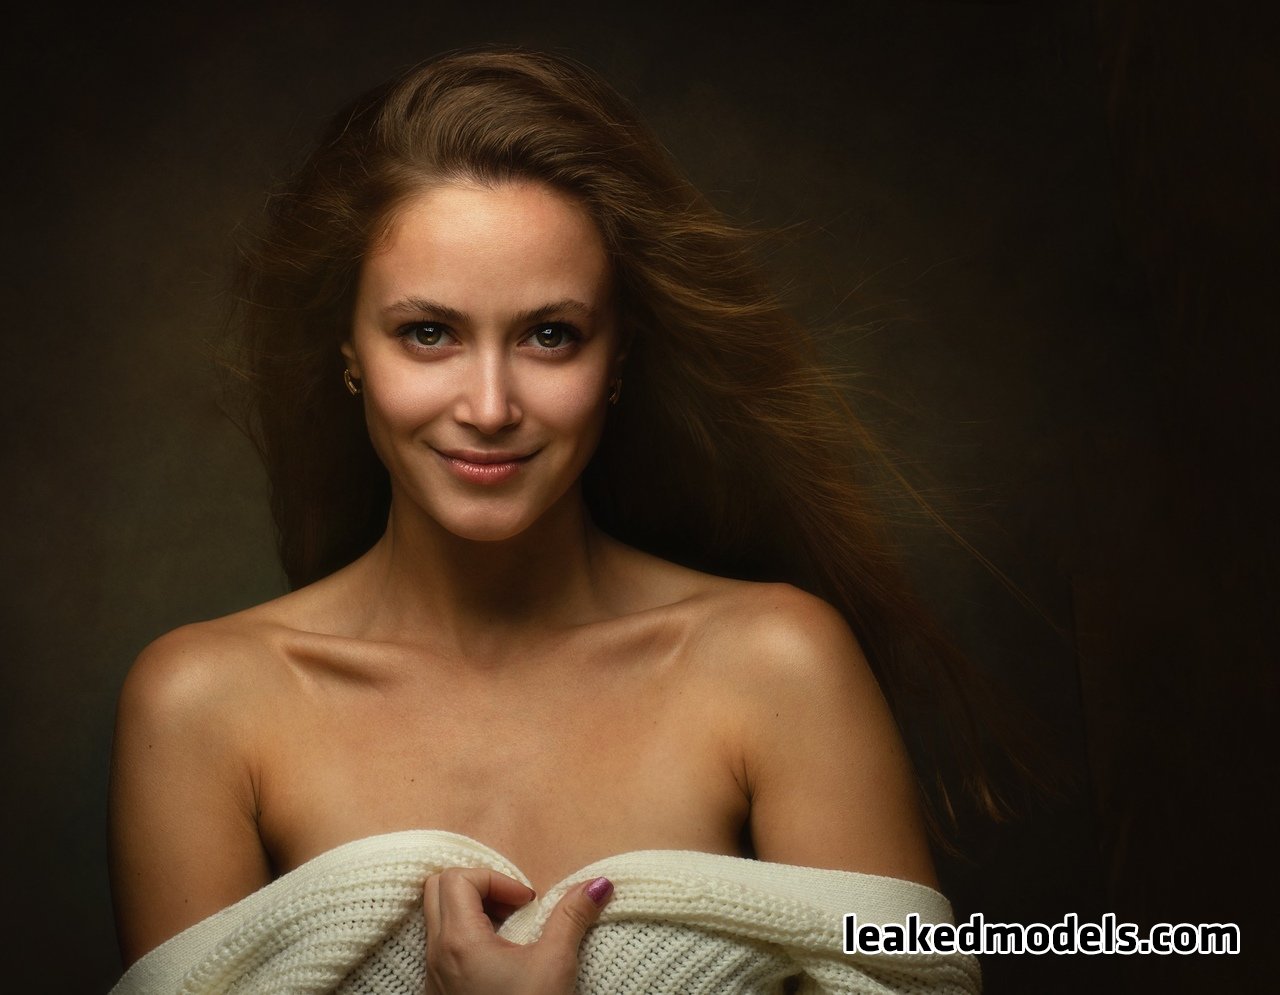 yulia sergeevna kalnitskaya leaked nude leakedmodels.com 0002 - Yulia Sergeevna Kalnitskaya – juli55555 Instagram Nude Leaks (25 Photos)